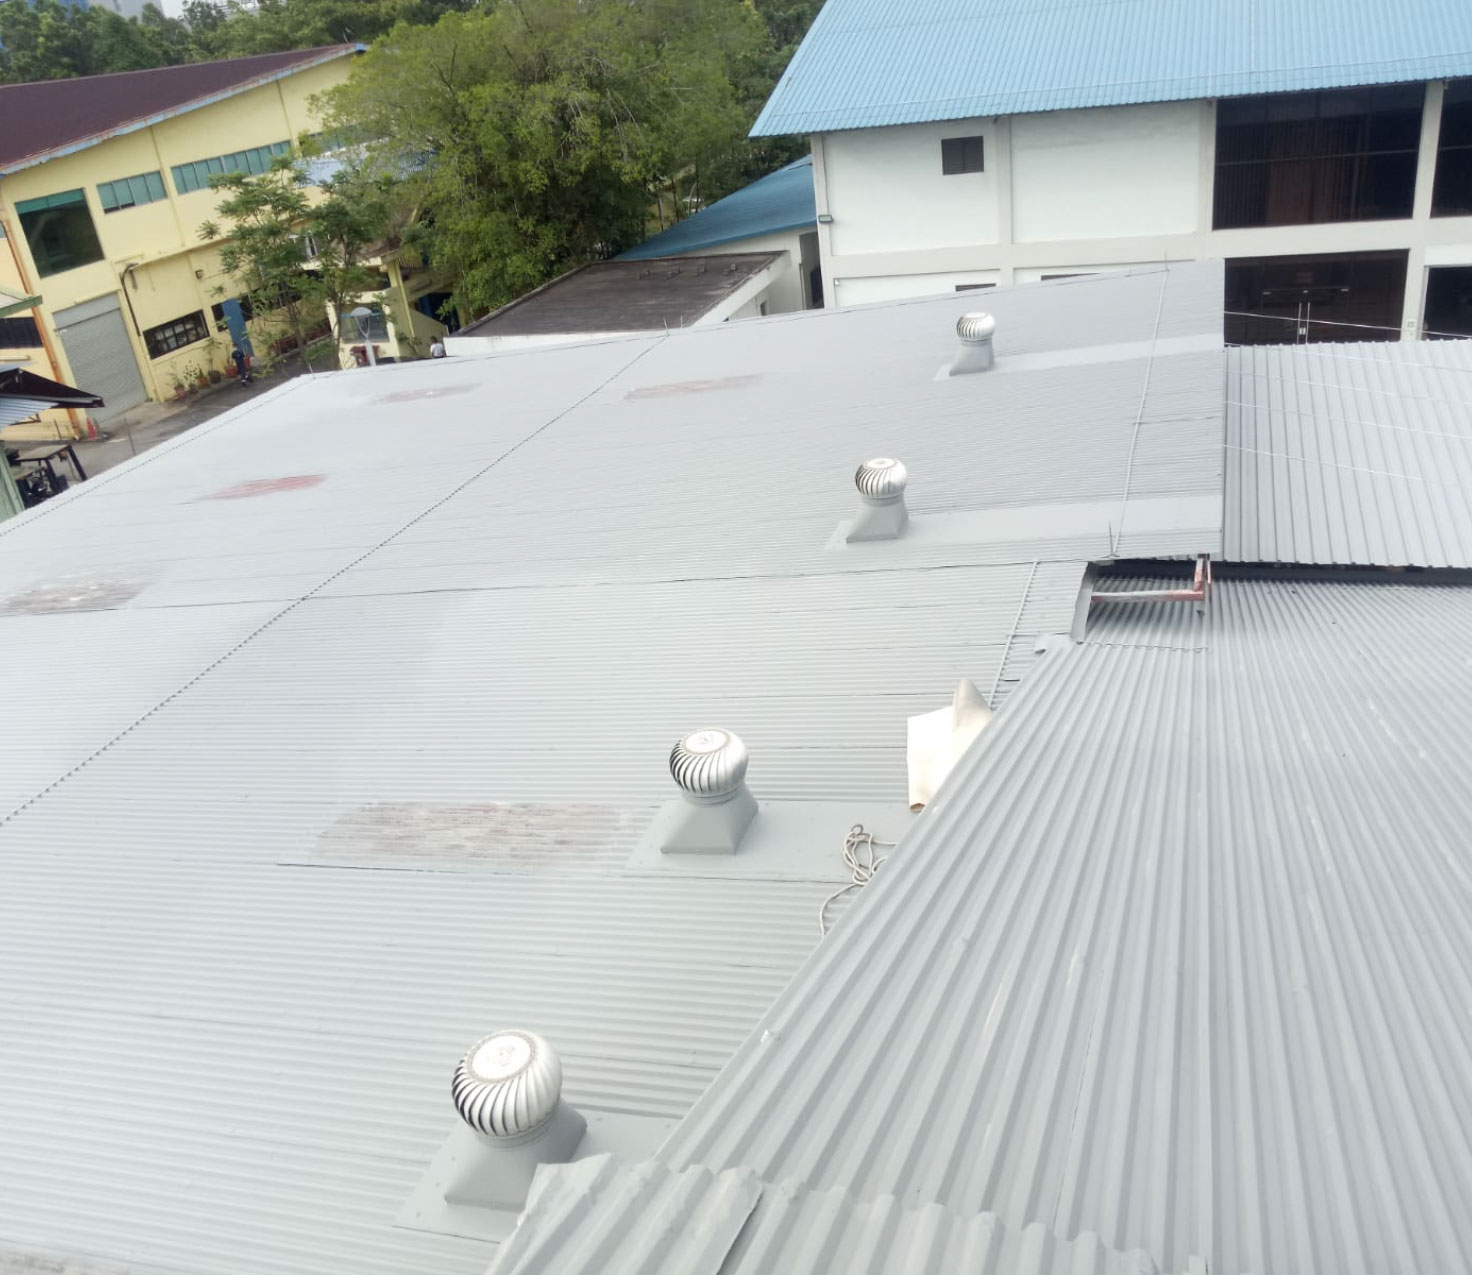 Metal Roof Waterproofing by Allstar Waterproofing & Services